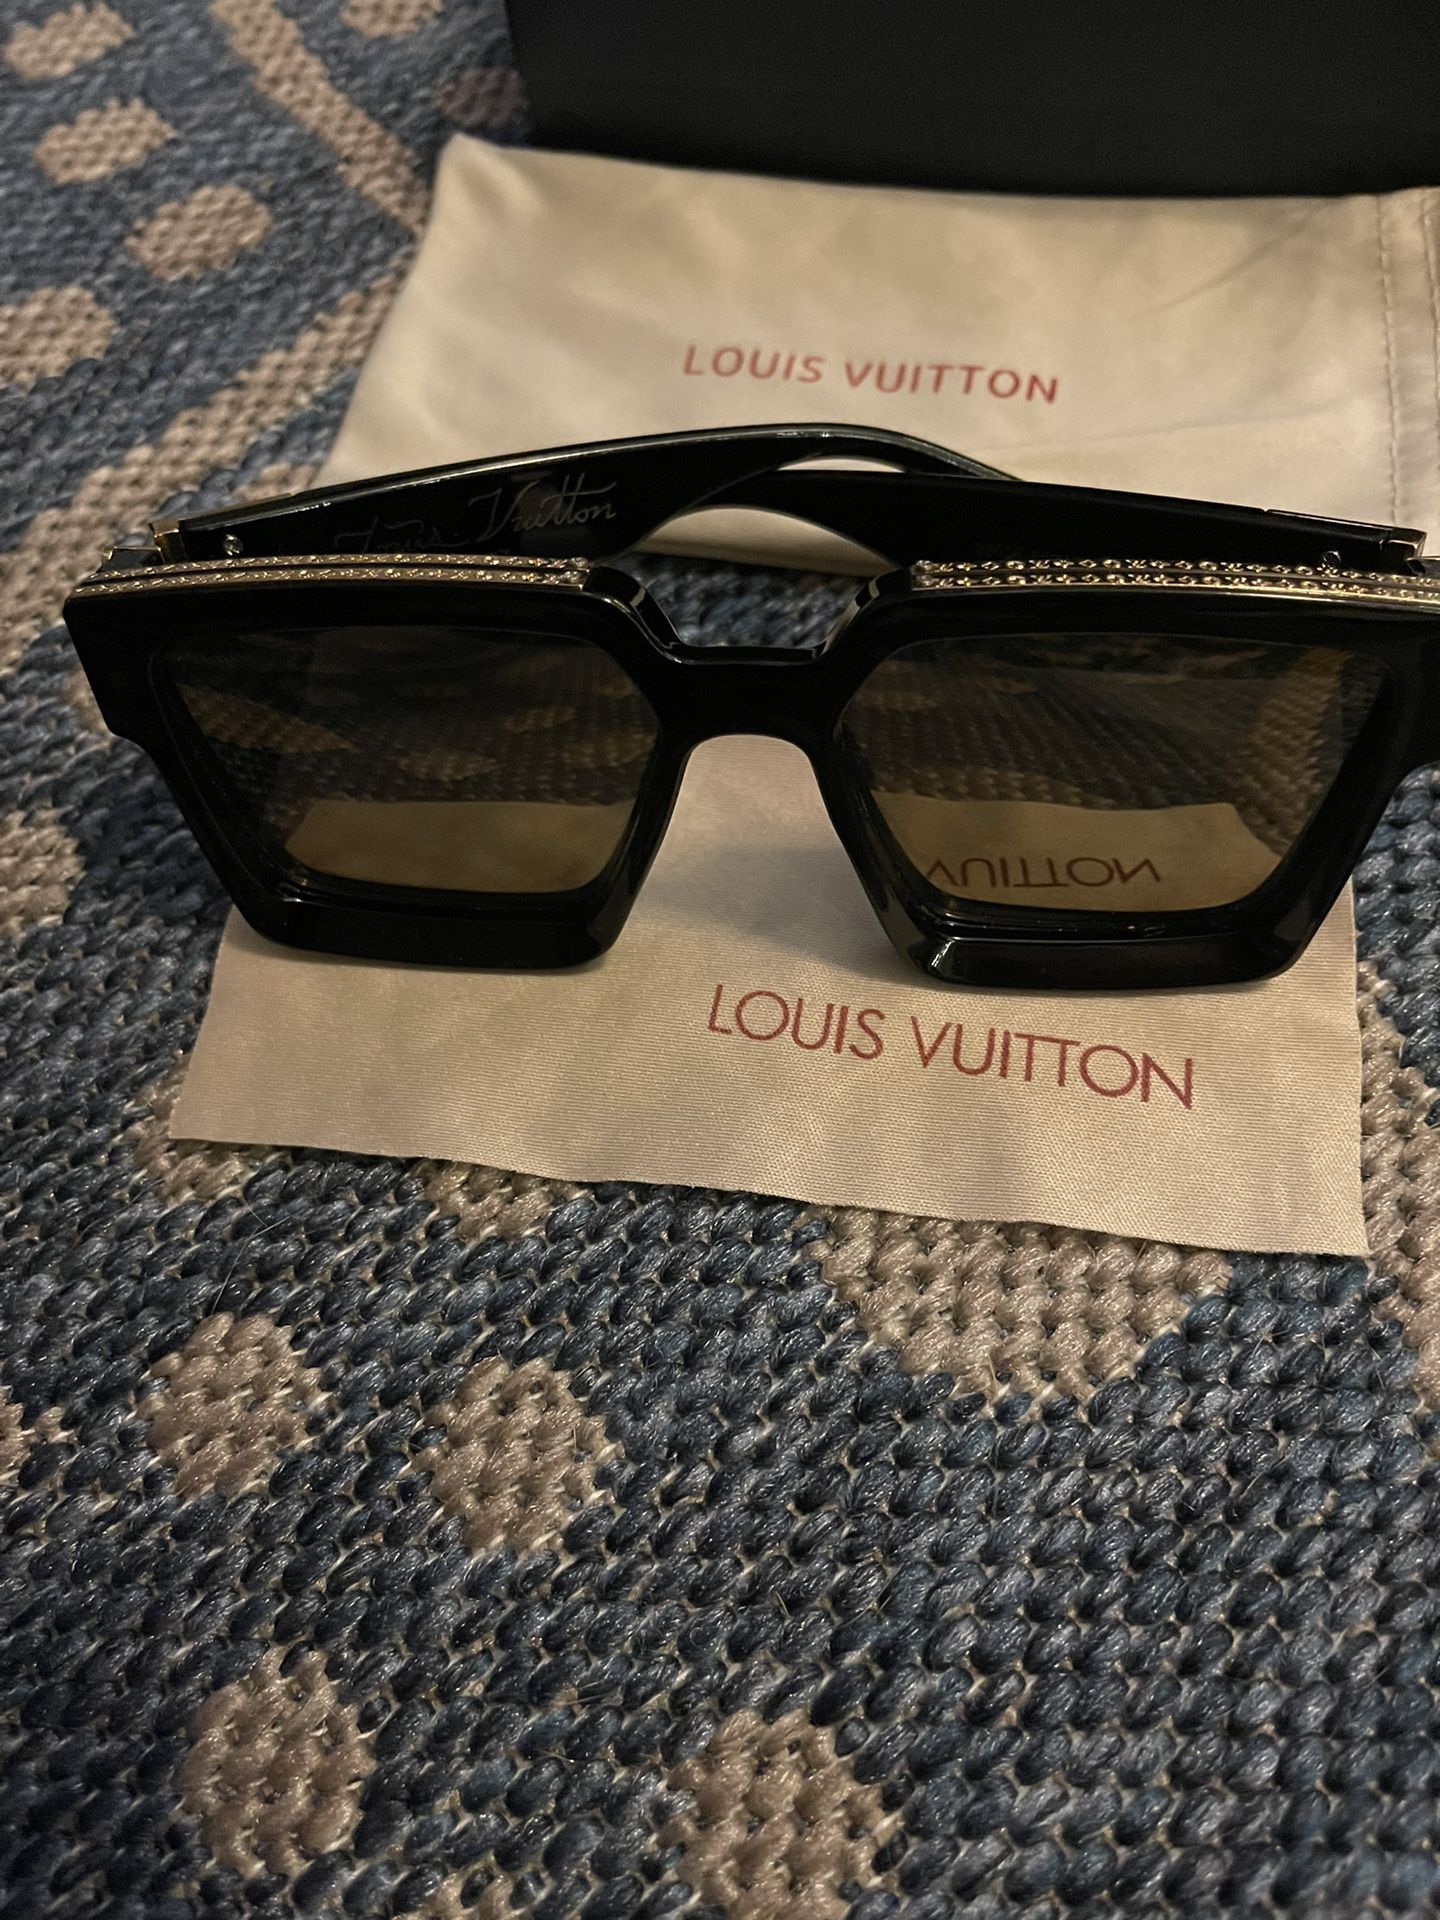 Authentic Louis Vuitton Black 1.1 Millionaires Sunglasses